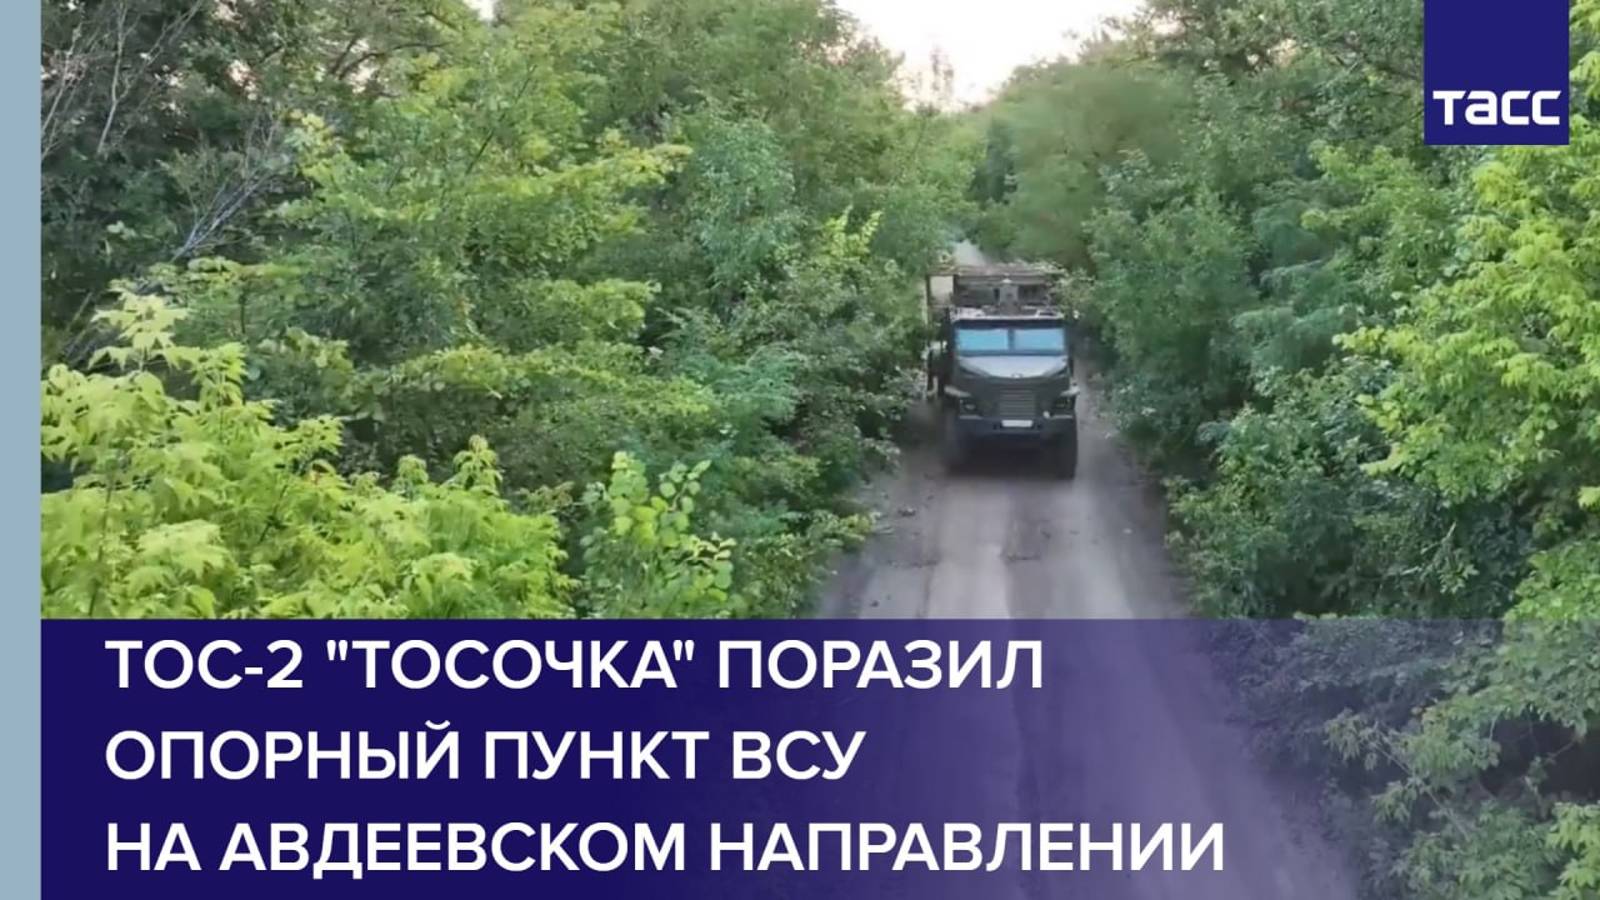 ТОС-2 "Тосочка" поразил опорный пункт ВСУ на авдеевском направлении